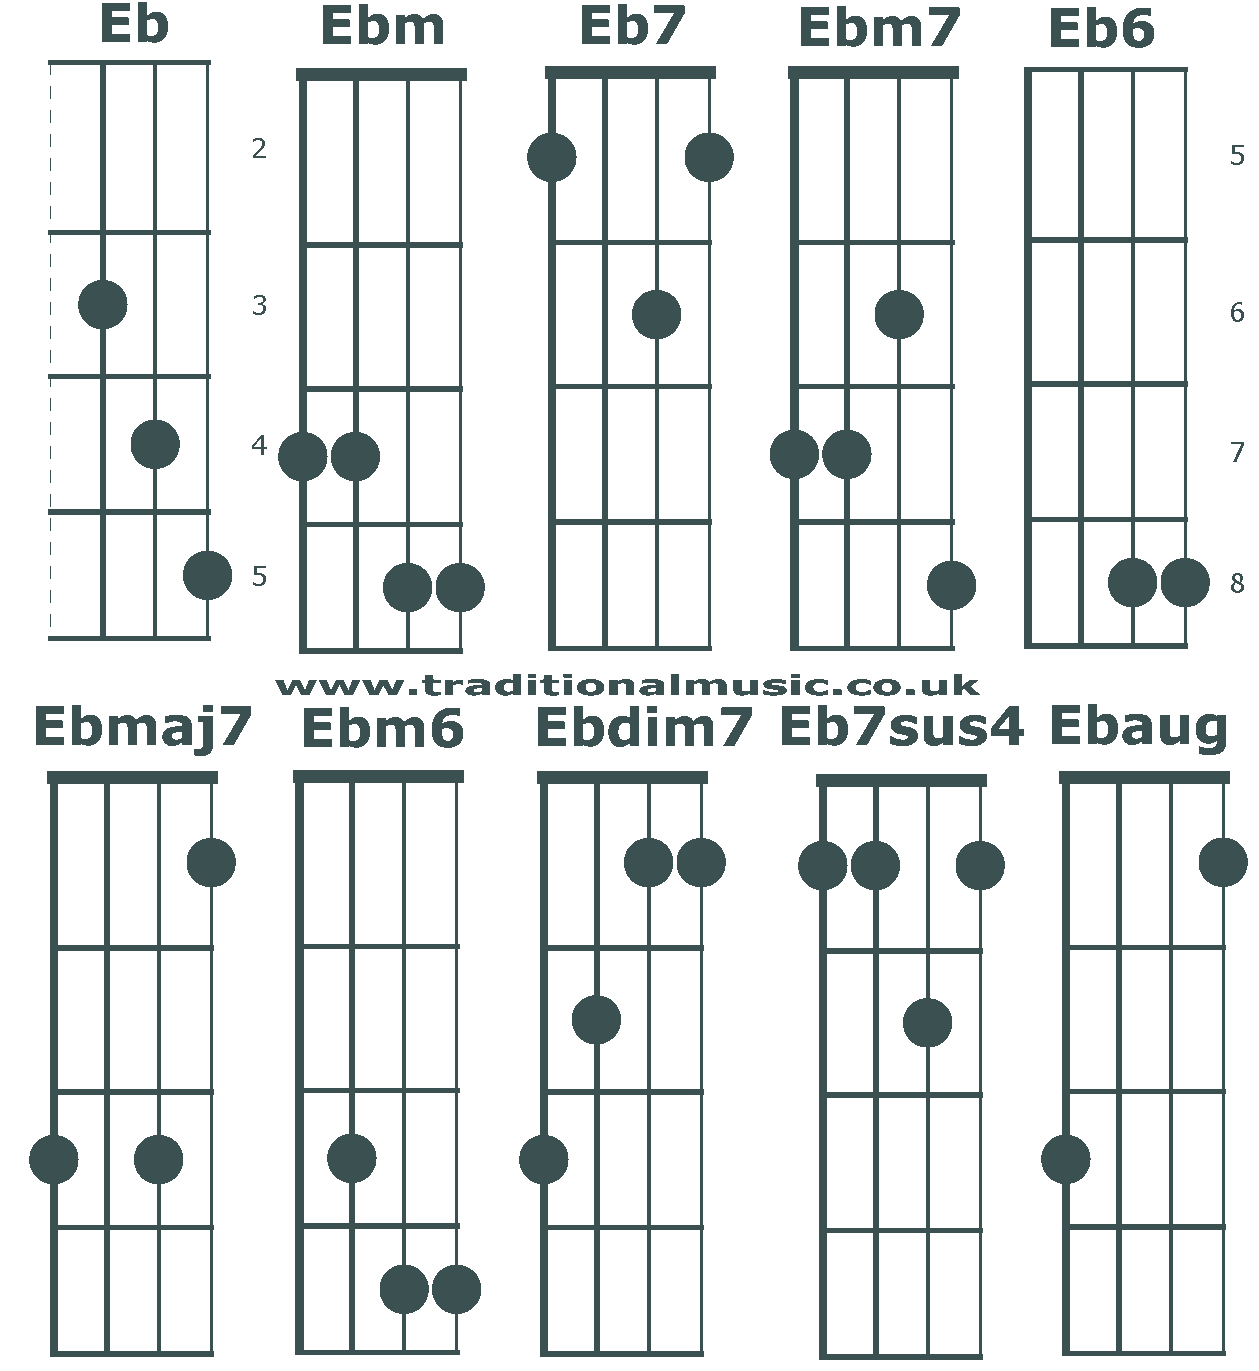 Banjo C tuning chords beginning Eb/D#